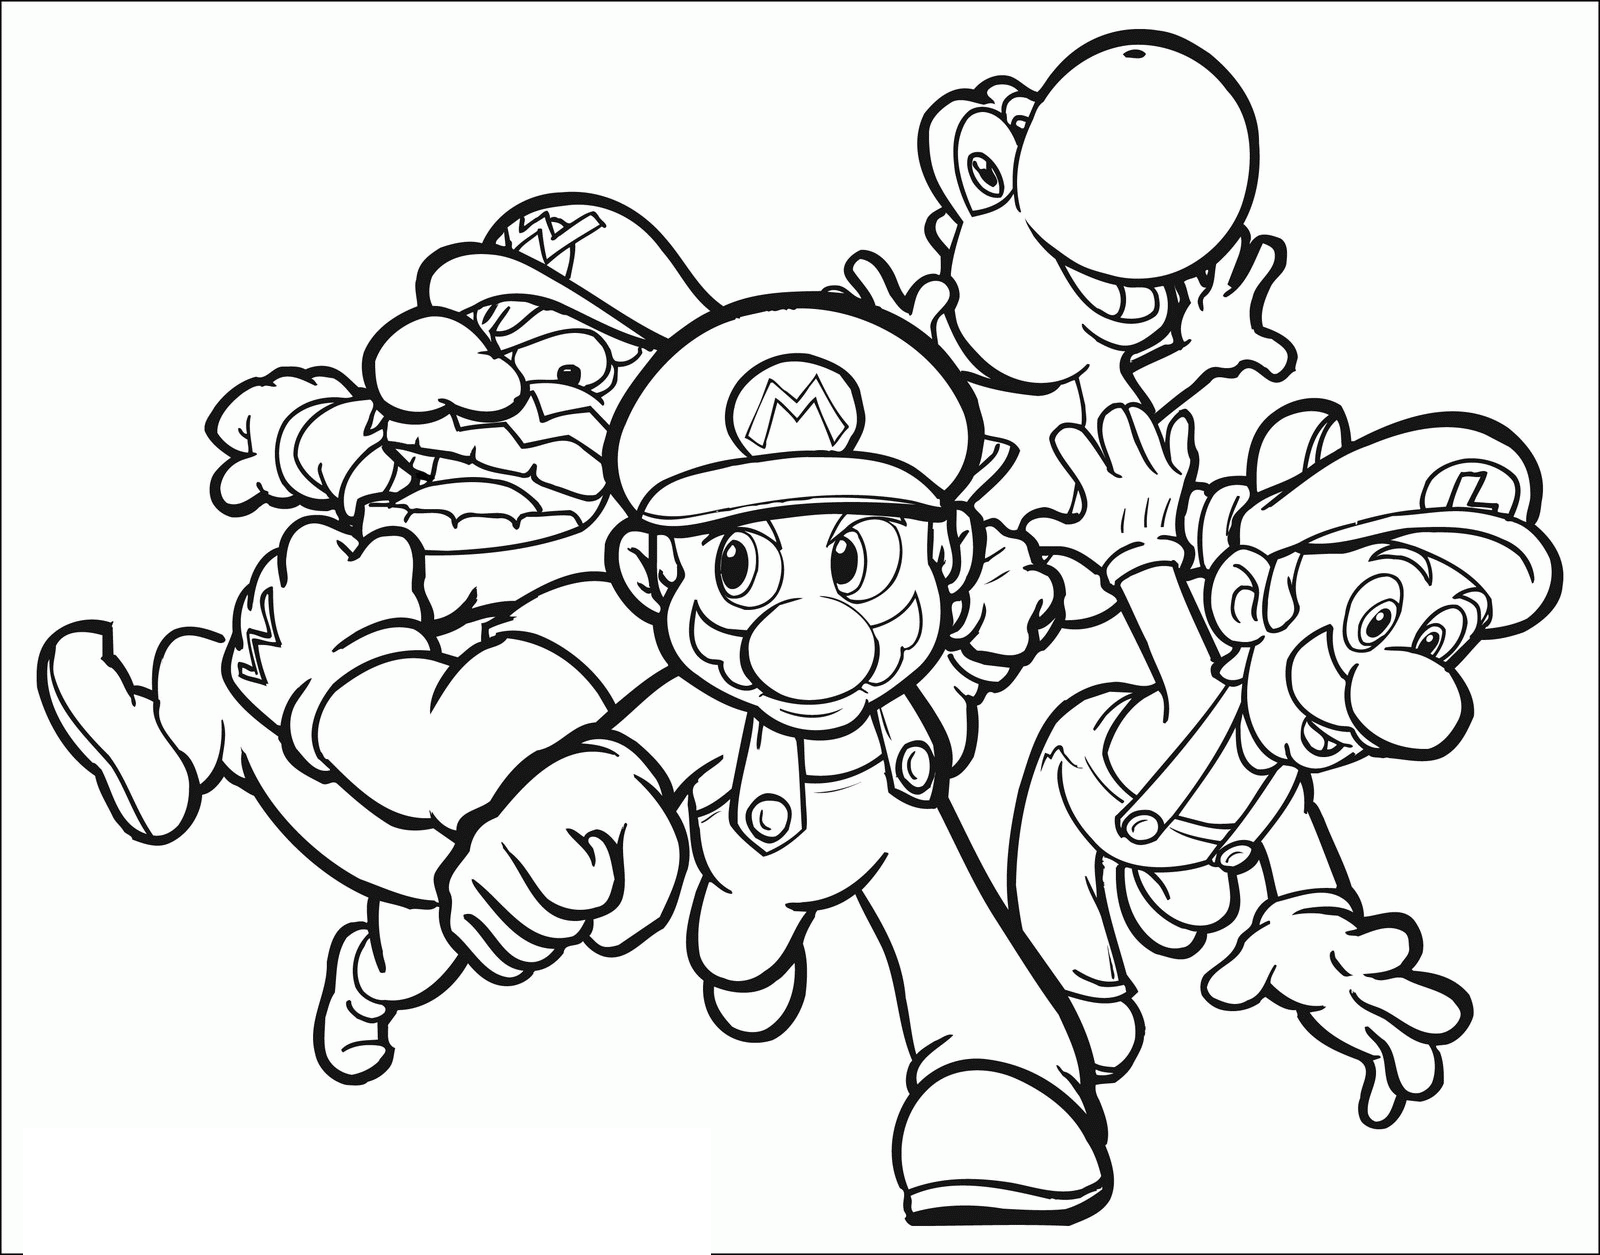 Desenho de Mario para colorir, com Luigi, Wario e Yoshi